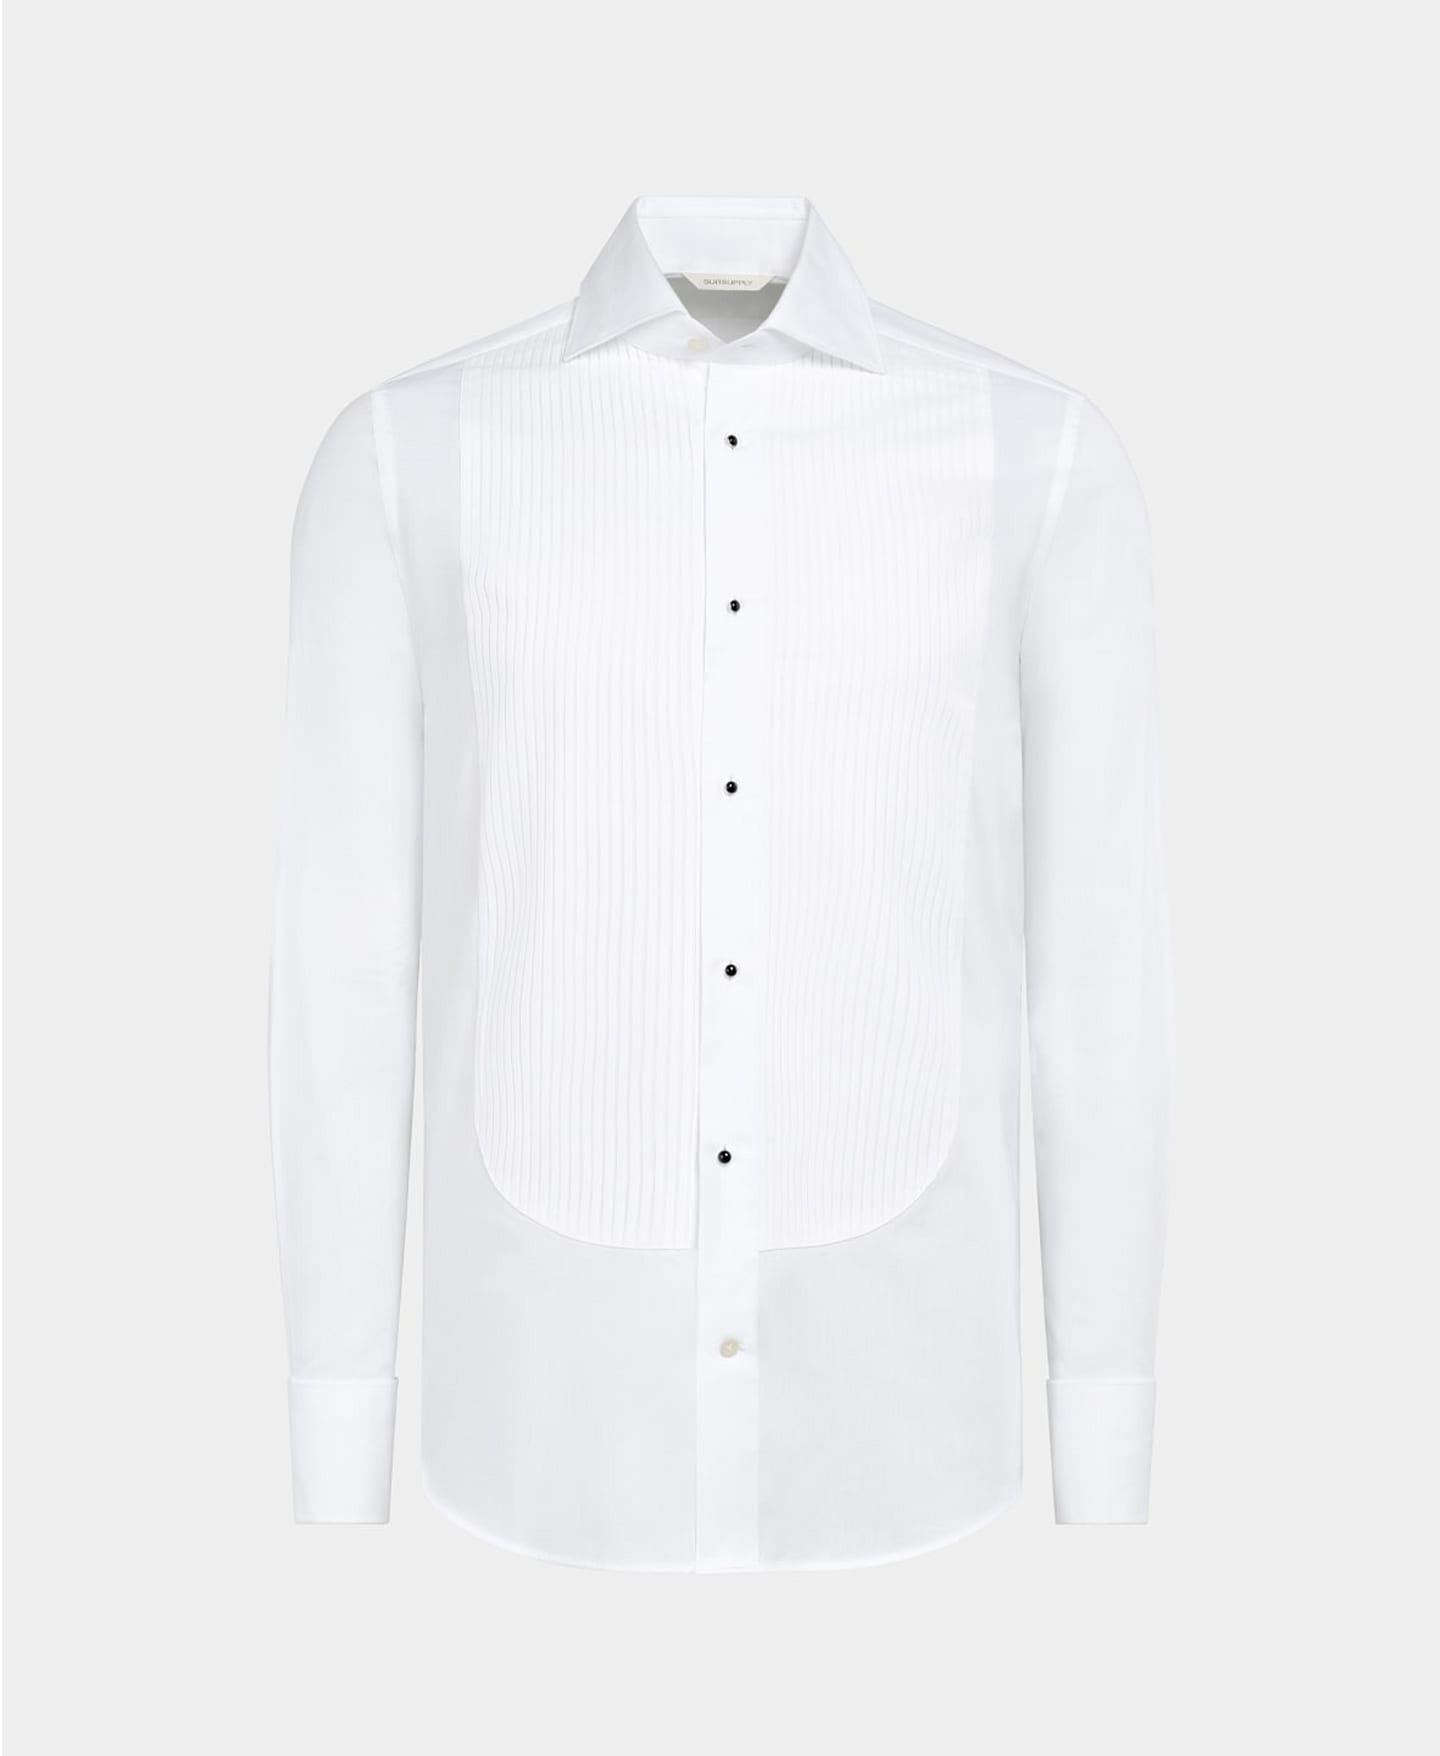 Biała koszula smokingowa z plisowanym frontem wykończona czarnymi emaliowanymi spinkami do mankietów.